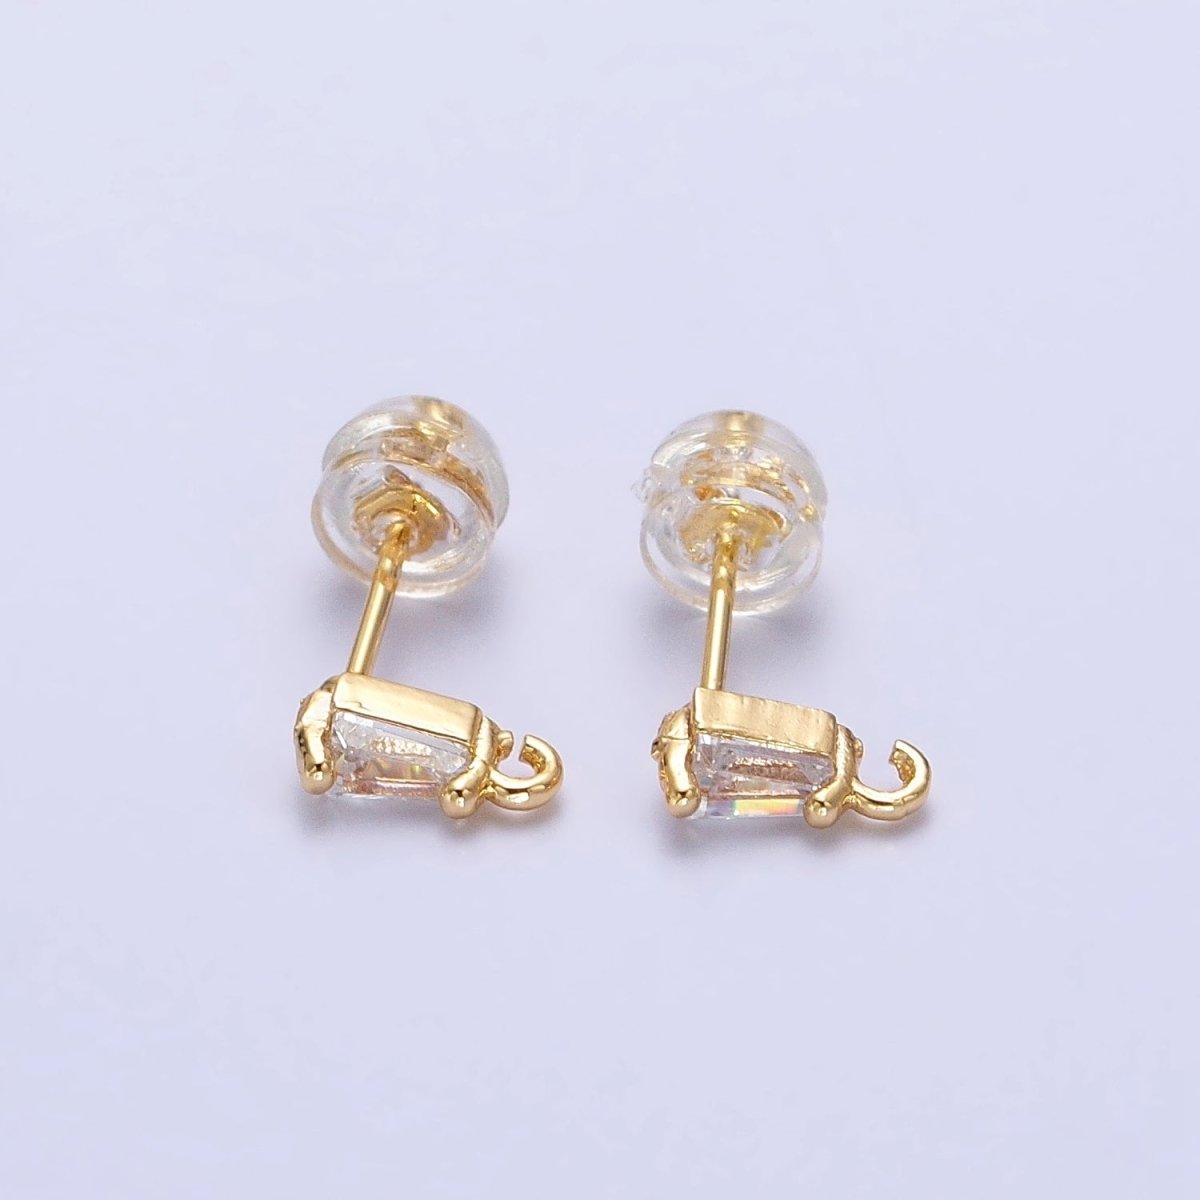 Mini Baguette Cut CZ Diamond Stud Earring Gold Earring Post with Open Link for Earring Supply Z-180 Z-181 - DLUXCA